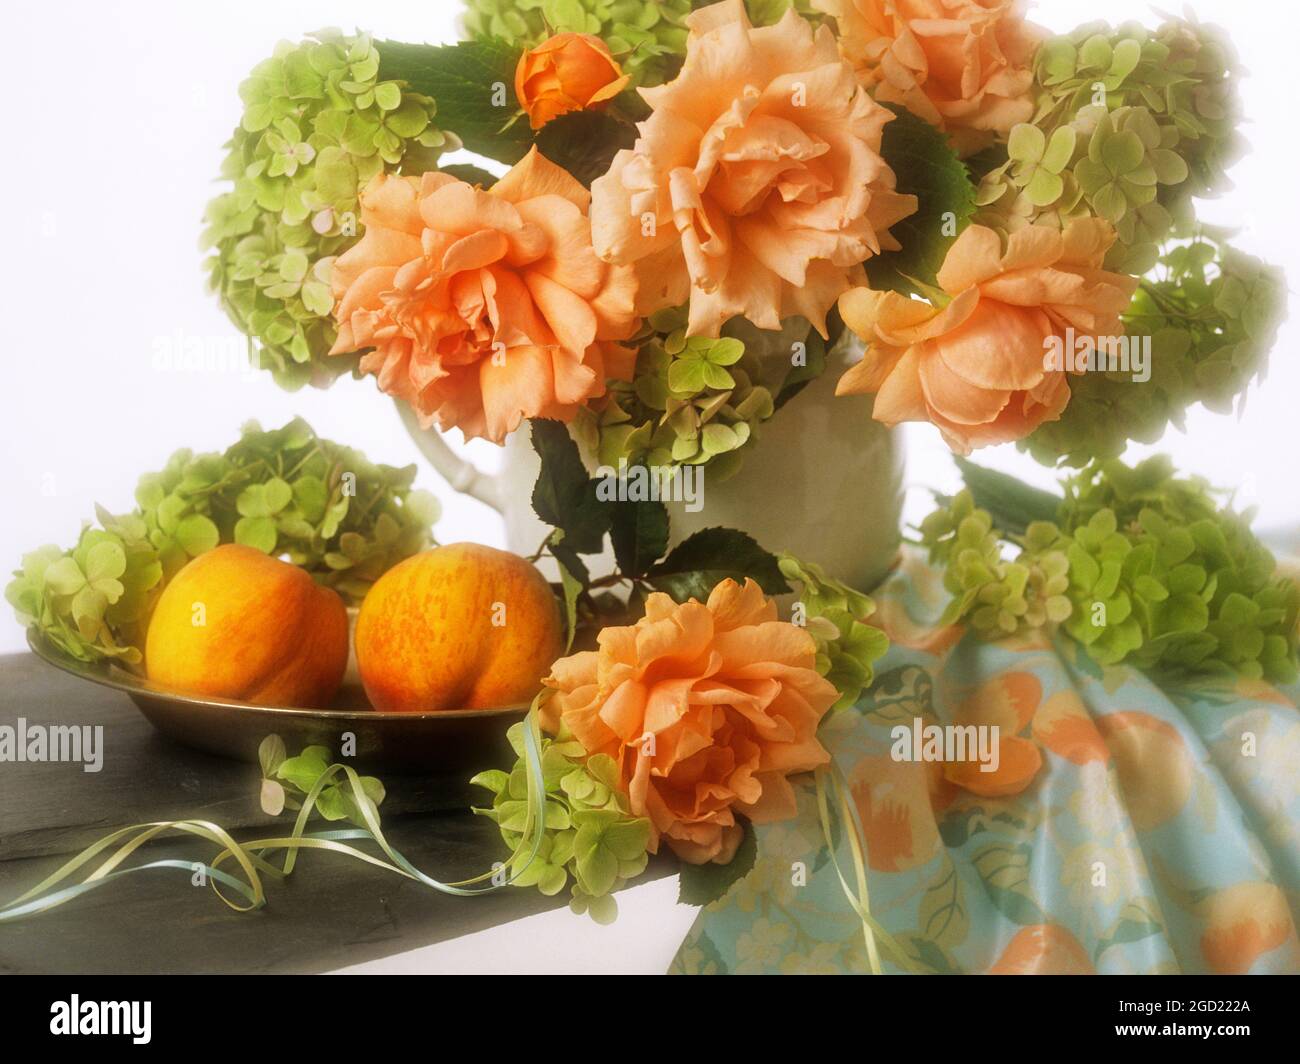 botanik, Rosen und Hortensien mit Schale zwei Pfirsiche, ZUSÄTZLICHE-RIGHTS-CLEARANCE-INFO-NOT-AVAILABLE Stockfoto